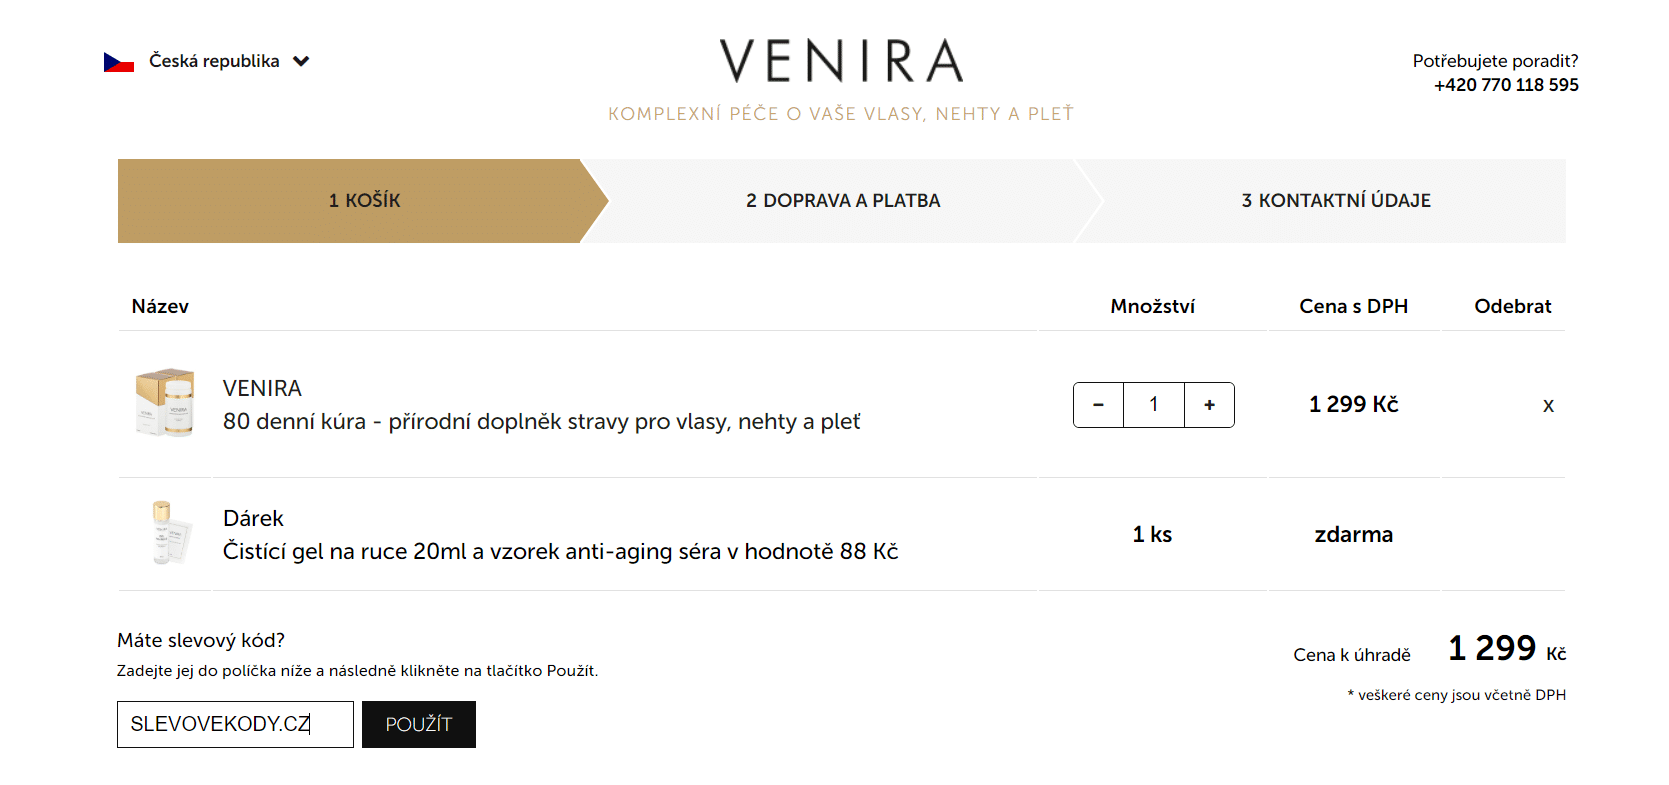 Venira